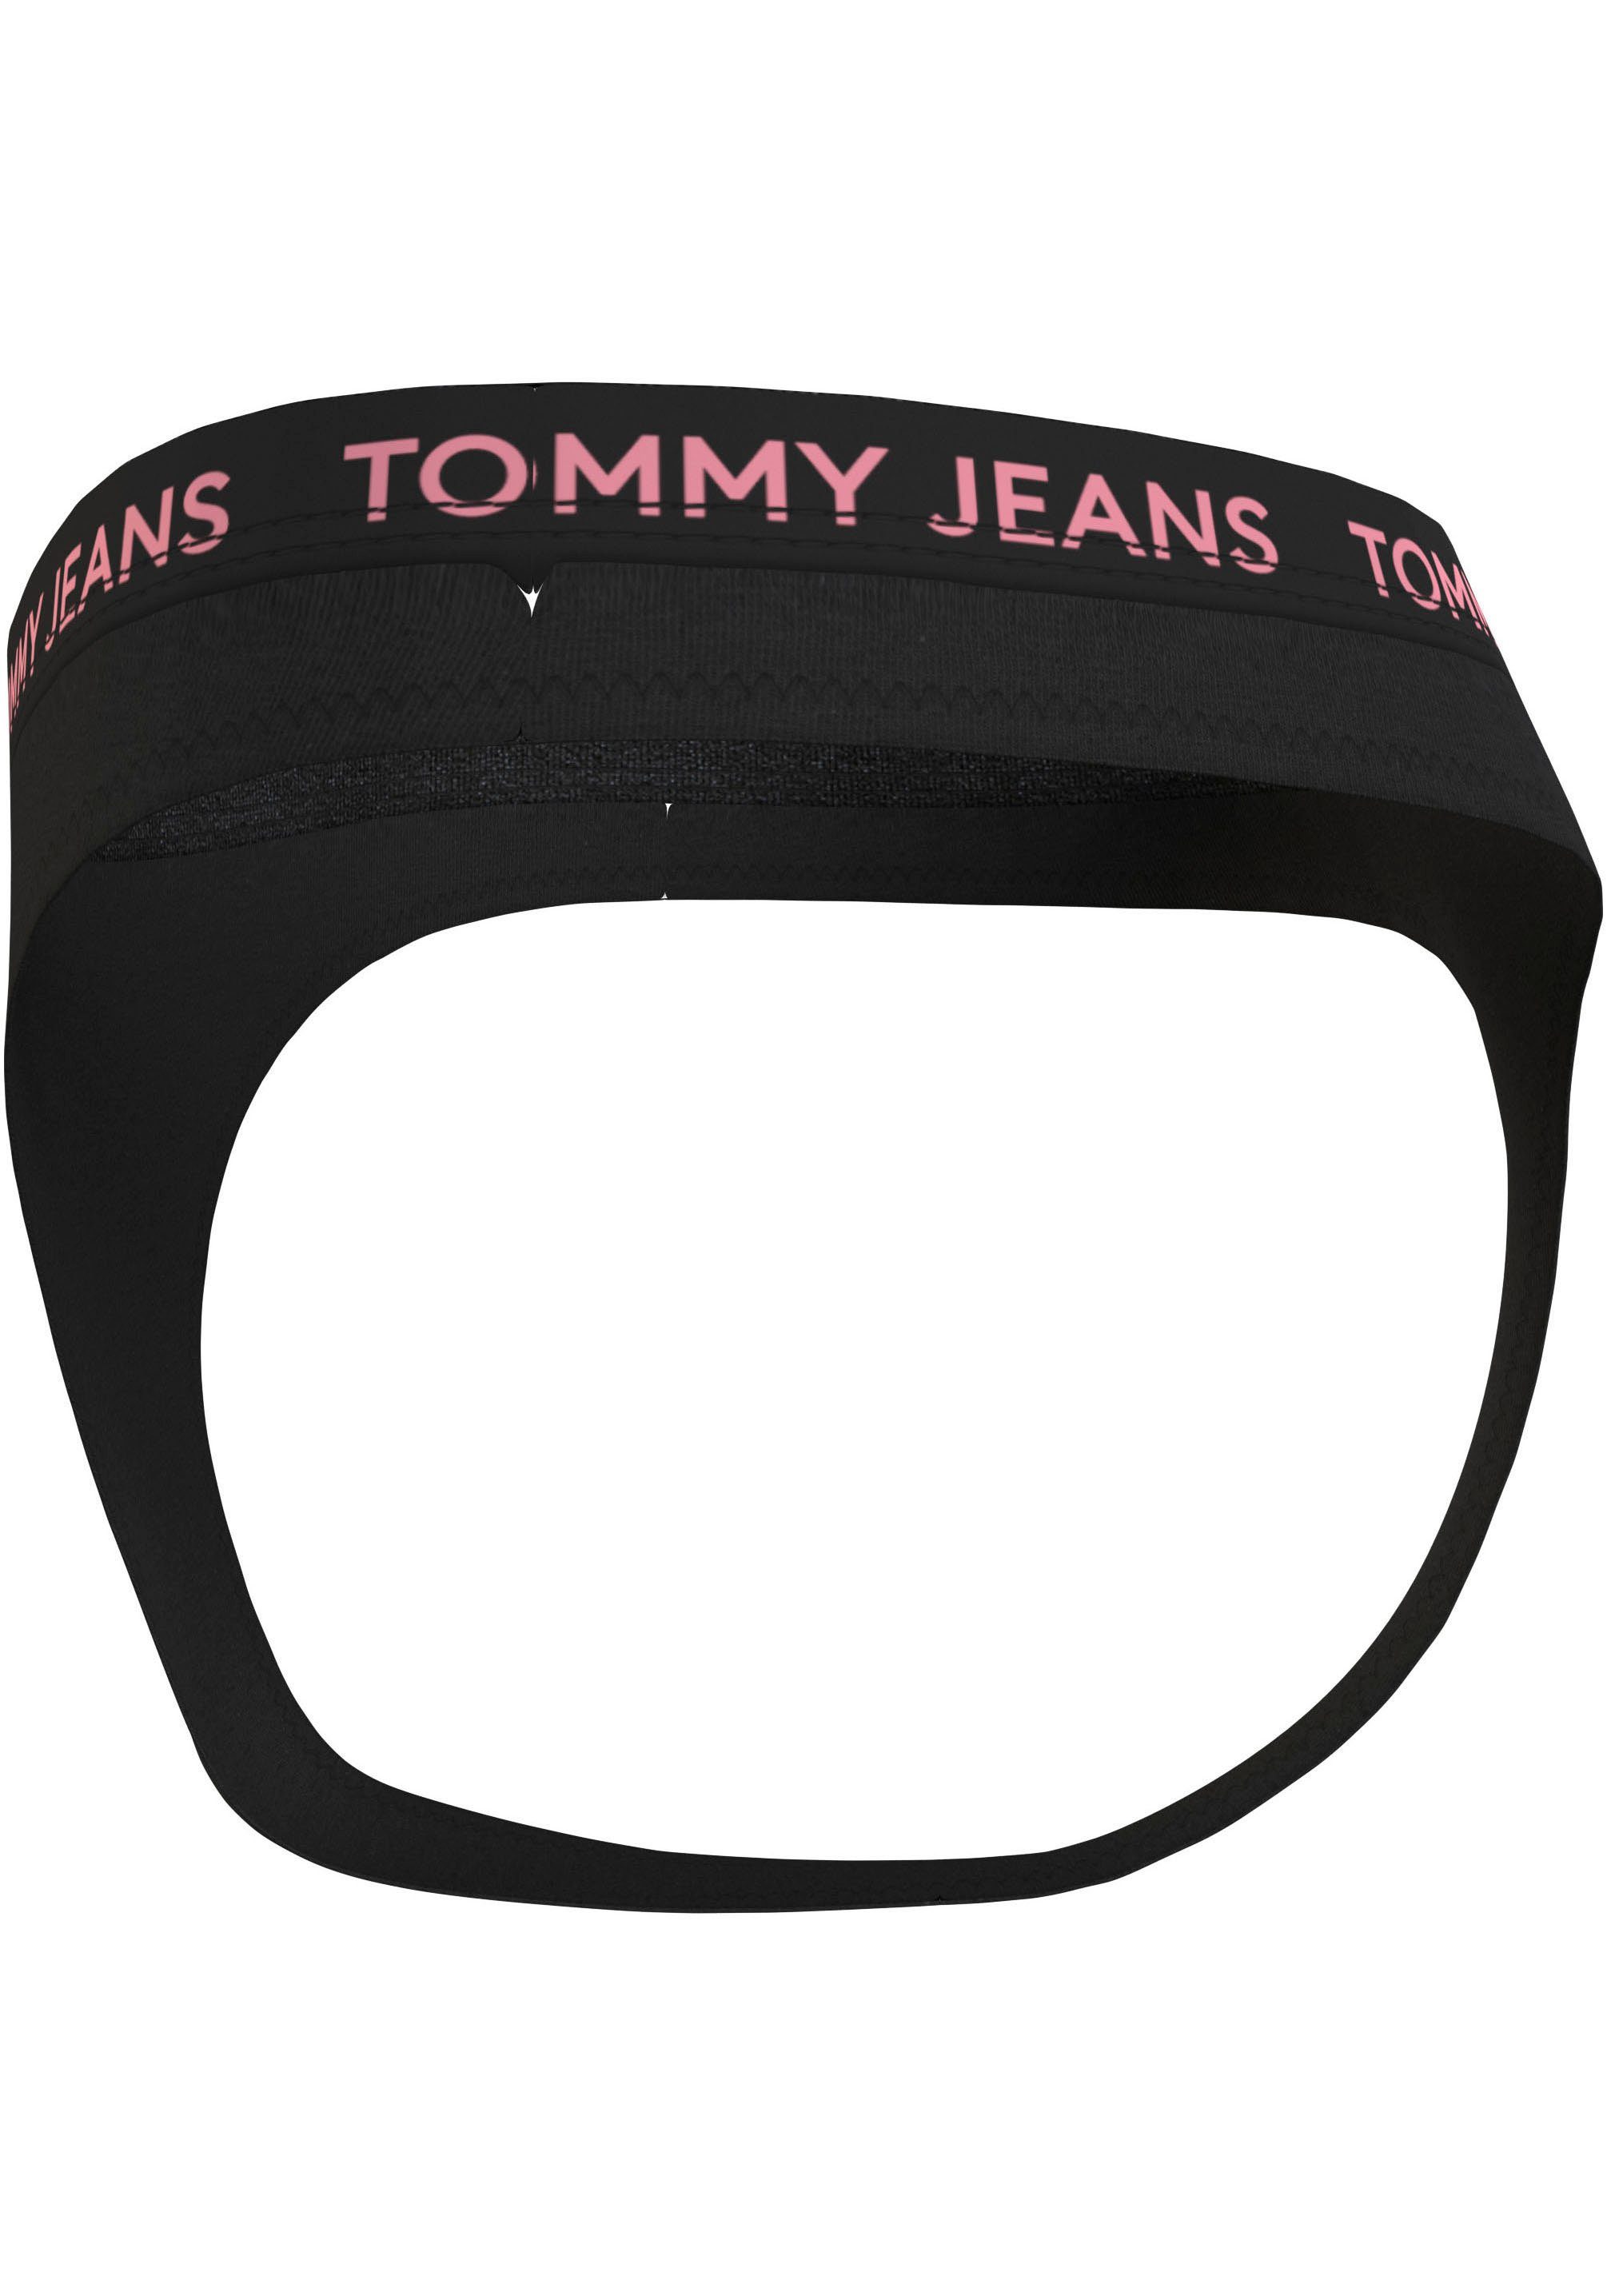 Tommy Hilfiger Underwear String 3P HIGH RISE THONG met elastische logo-band (Set van 3)